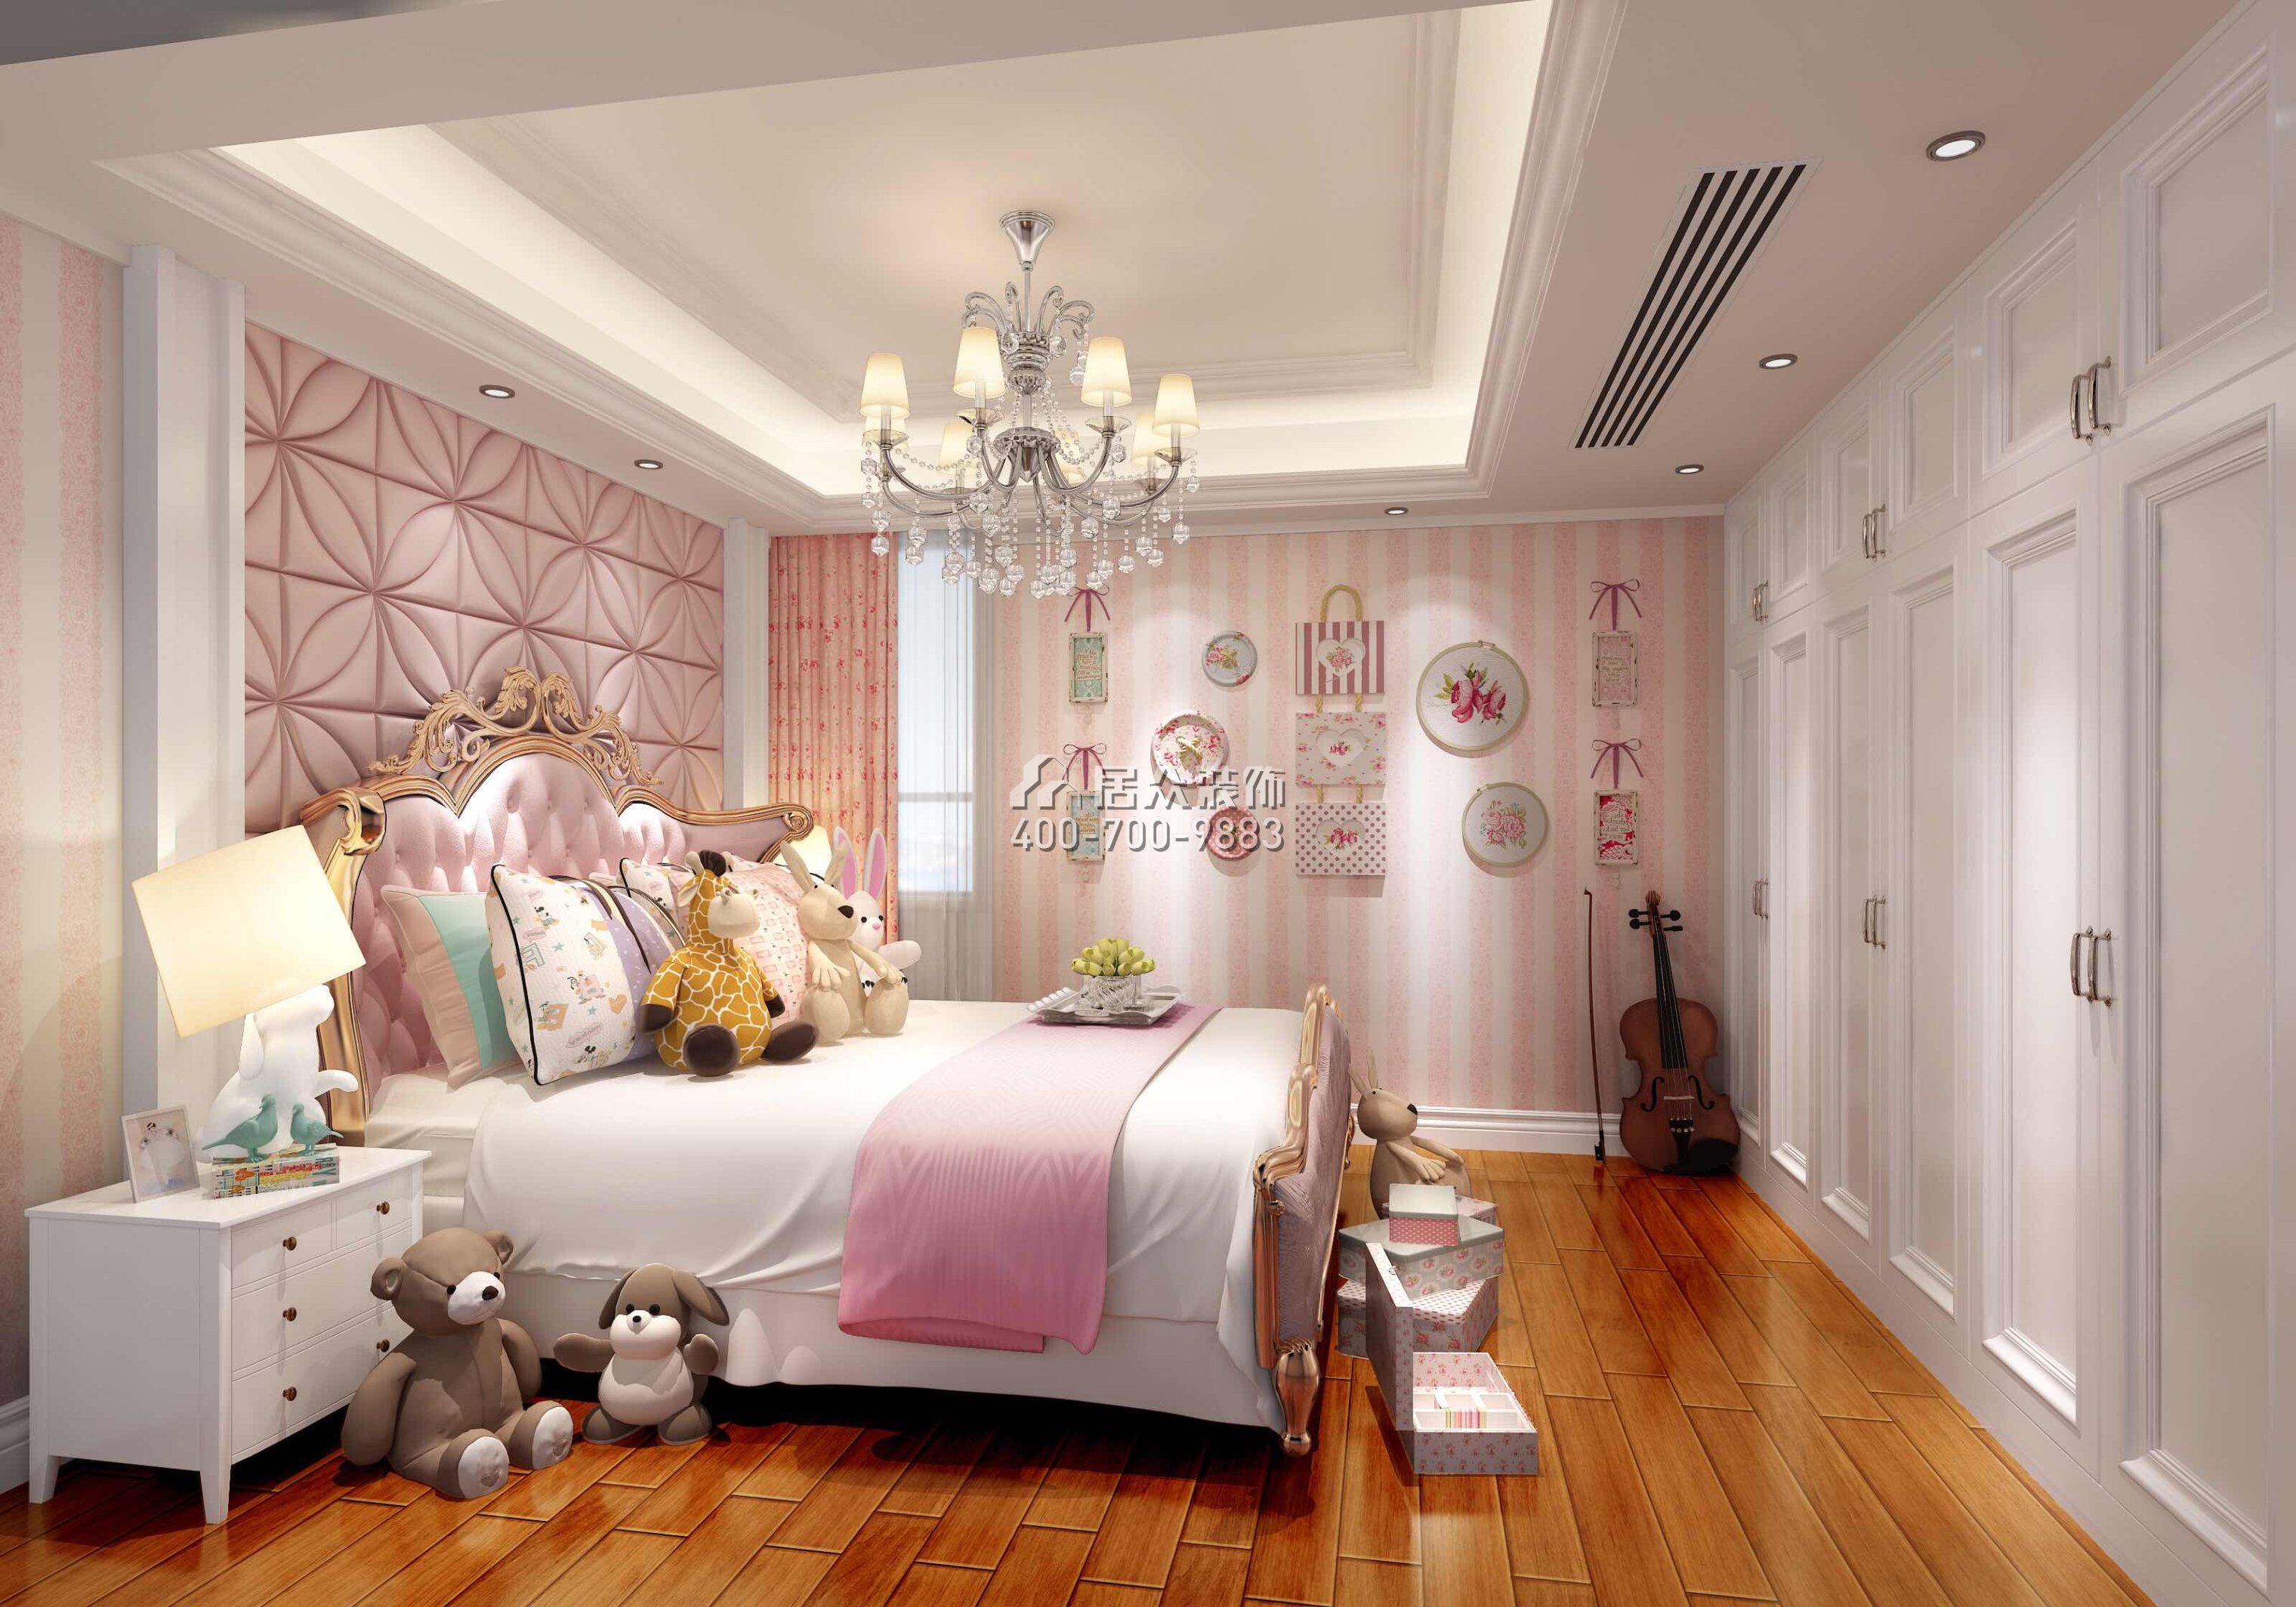 美加廣場270平方米歐式風格復式戶型臥室裝修效果圖